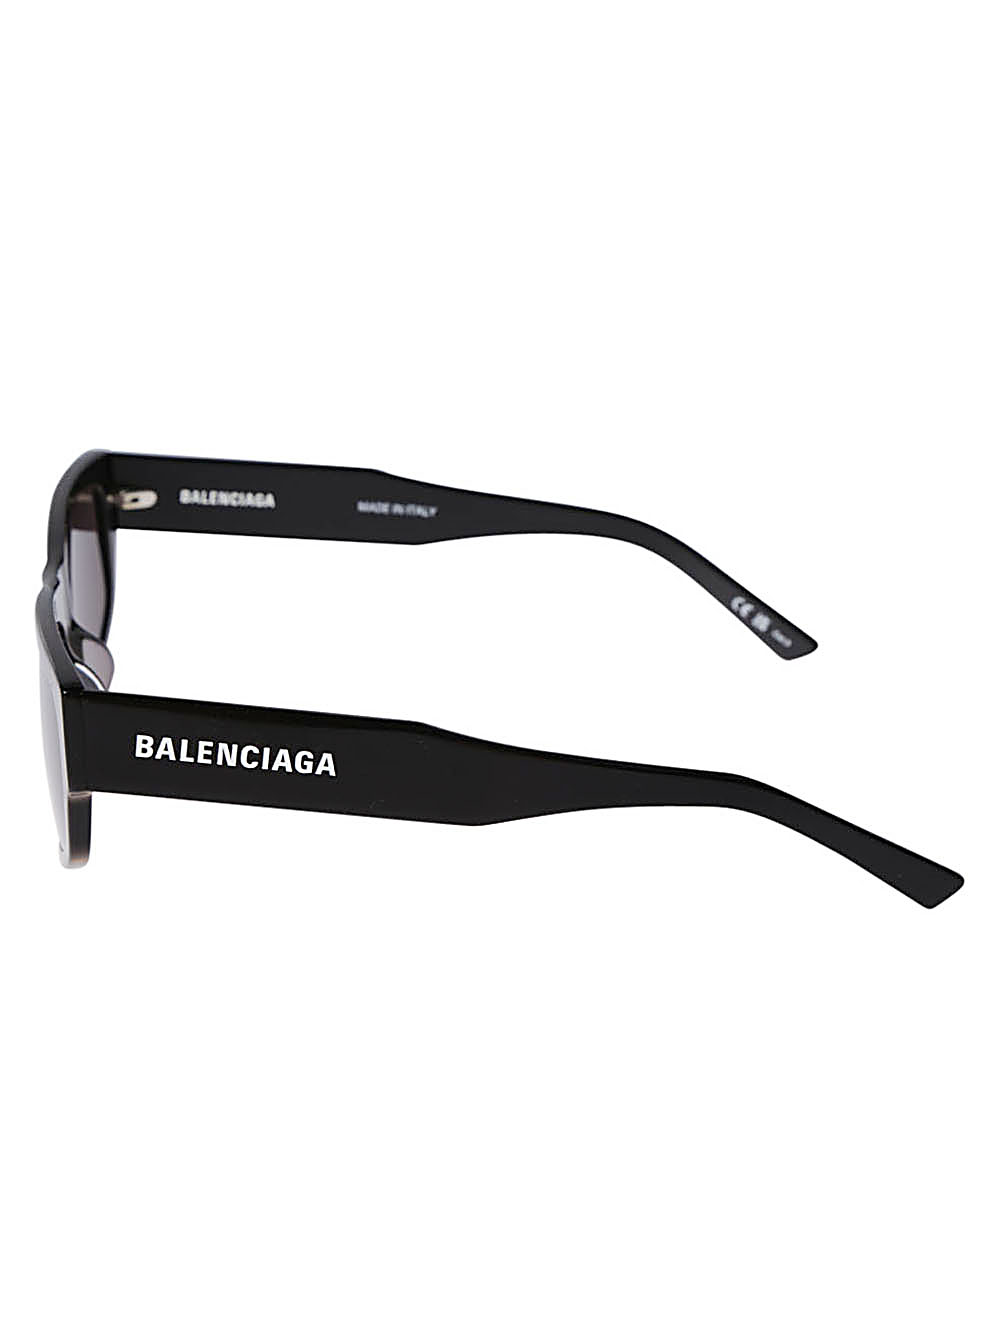 Balenciaga BALENCIAGA- Sunglasses